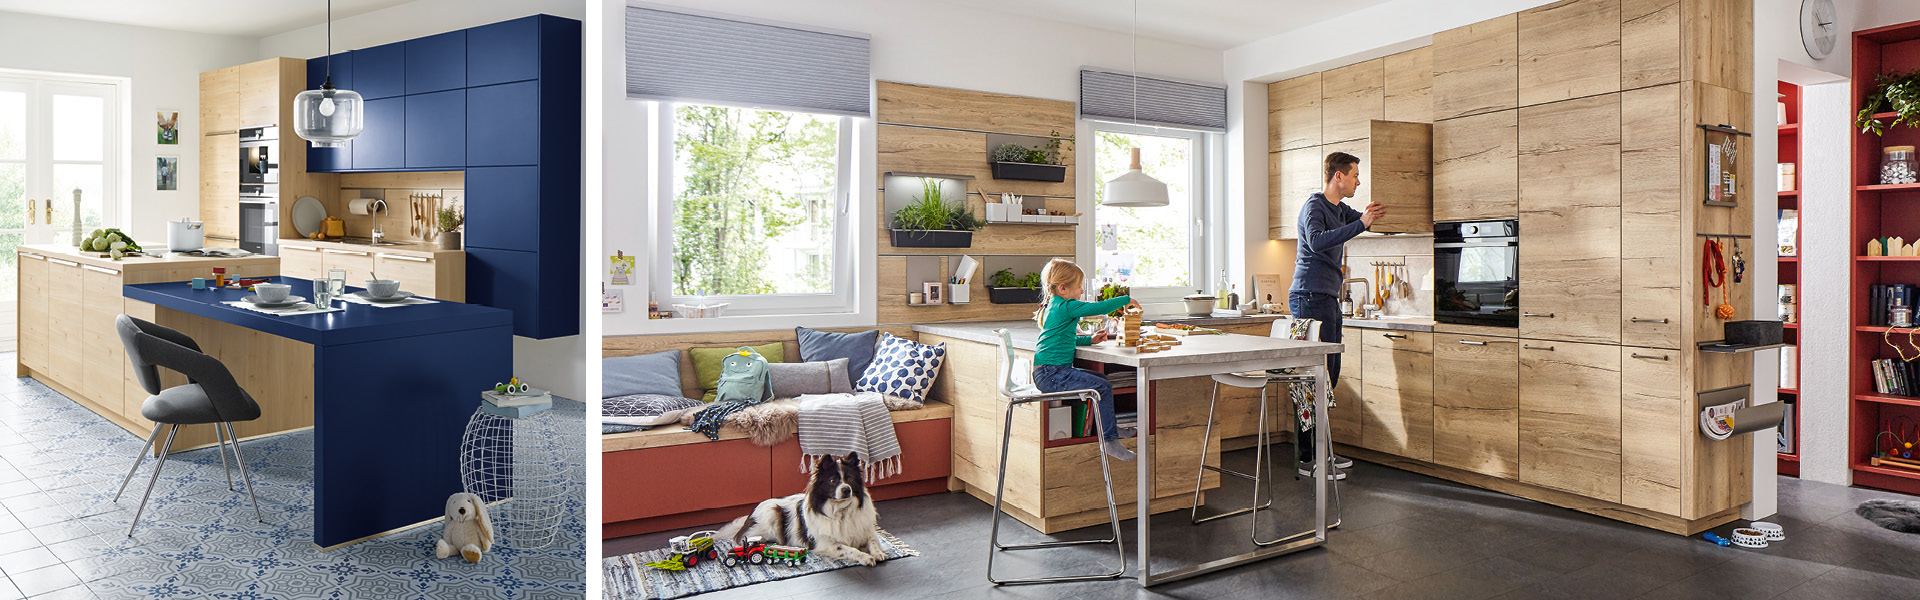 Mann mit Kind in offener Wohnküche in Holzoptik